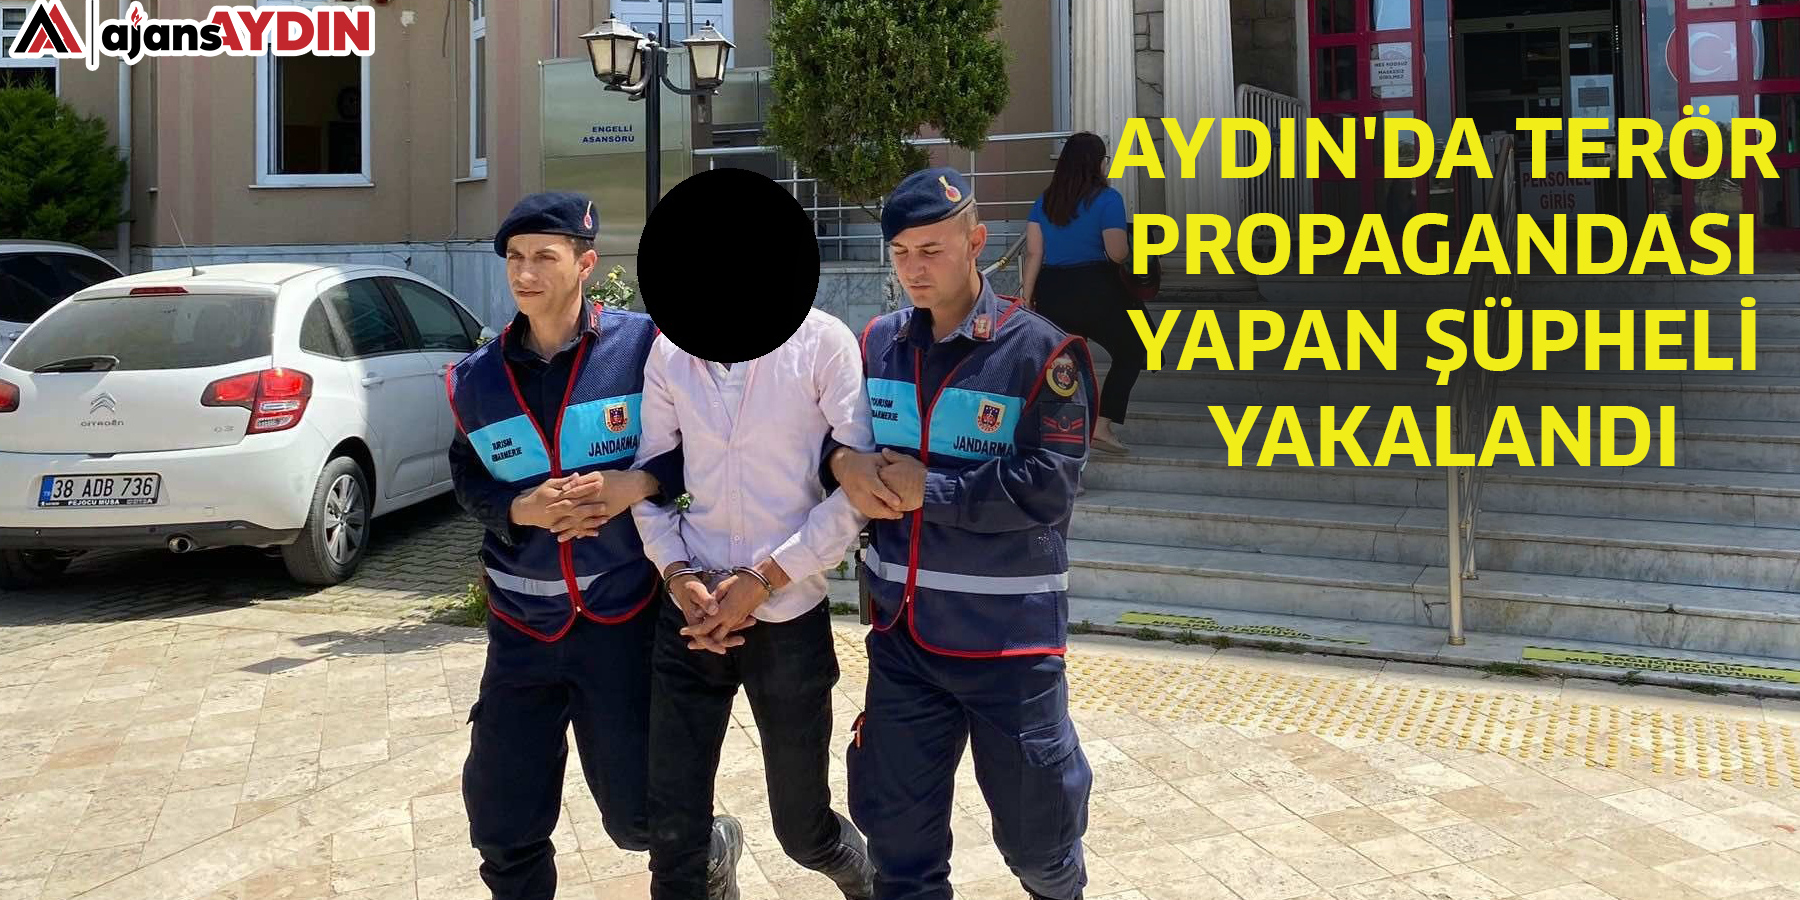 Aydın'da terör propagandası yapan şüpheli yakalandı